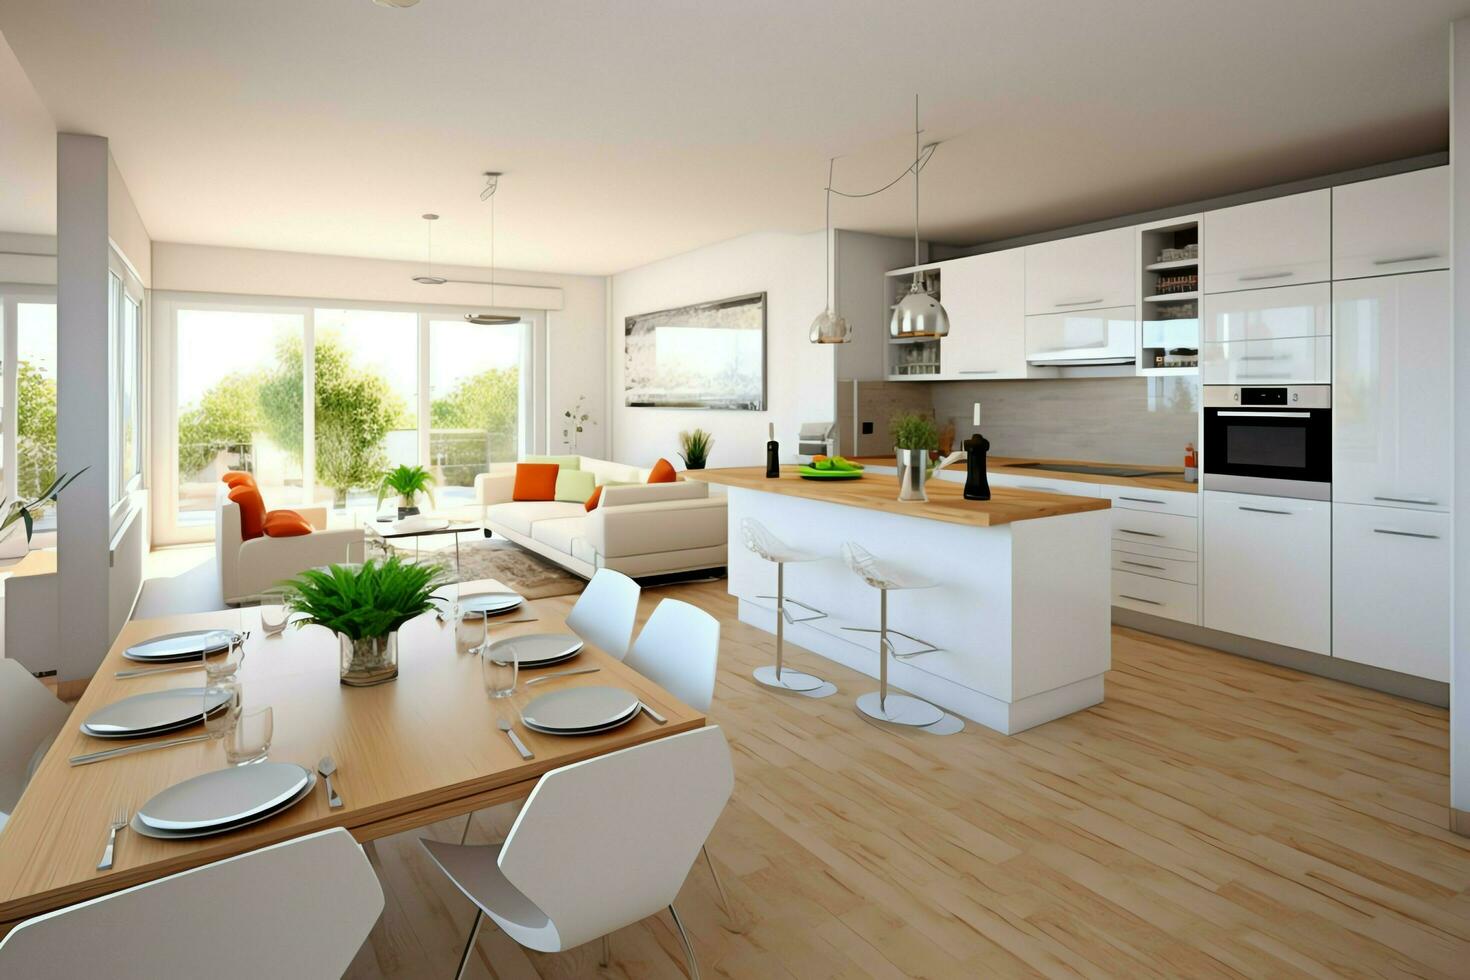 moderne cuisine intérieur conception dans appartement ou maison avec meubles. luxe cuisine Accueil scandinave concept par ai généré photo